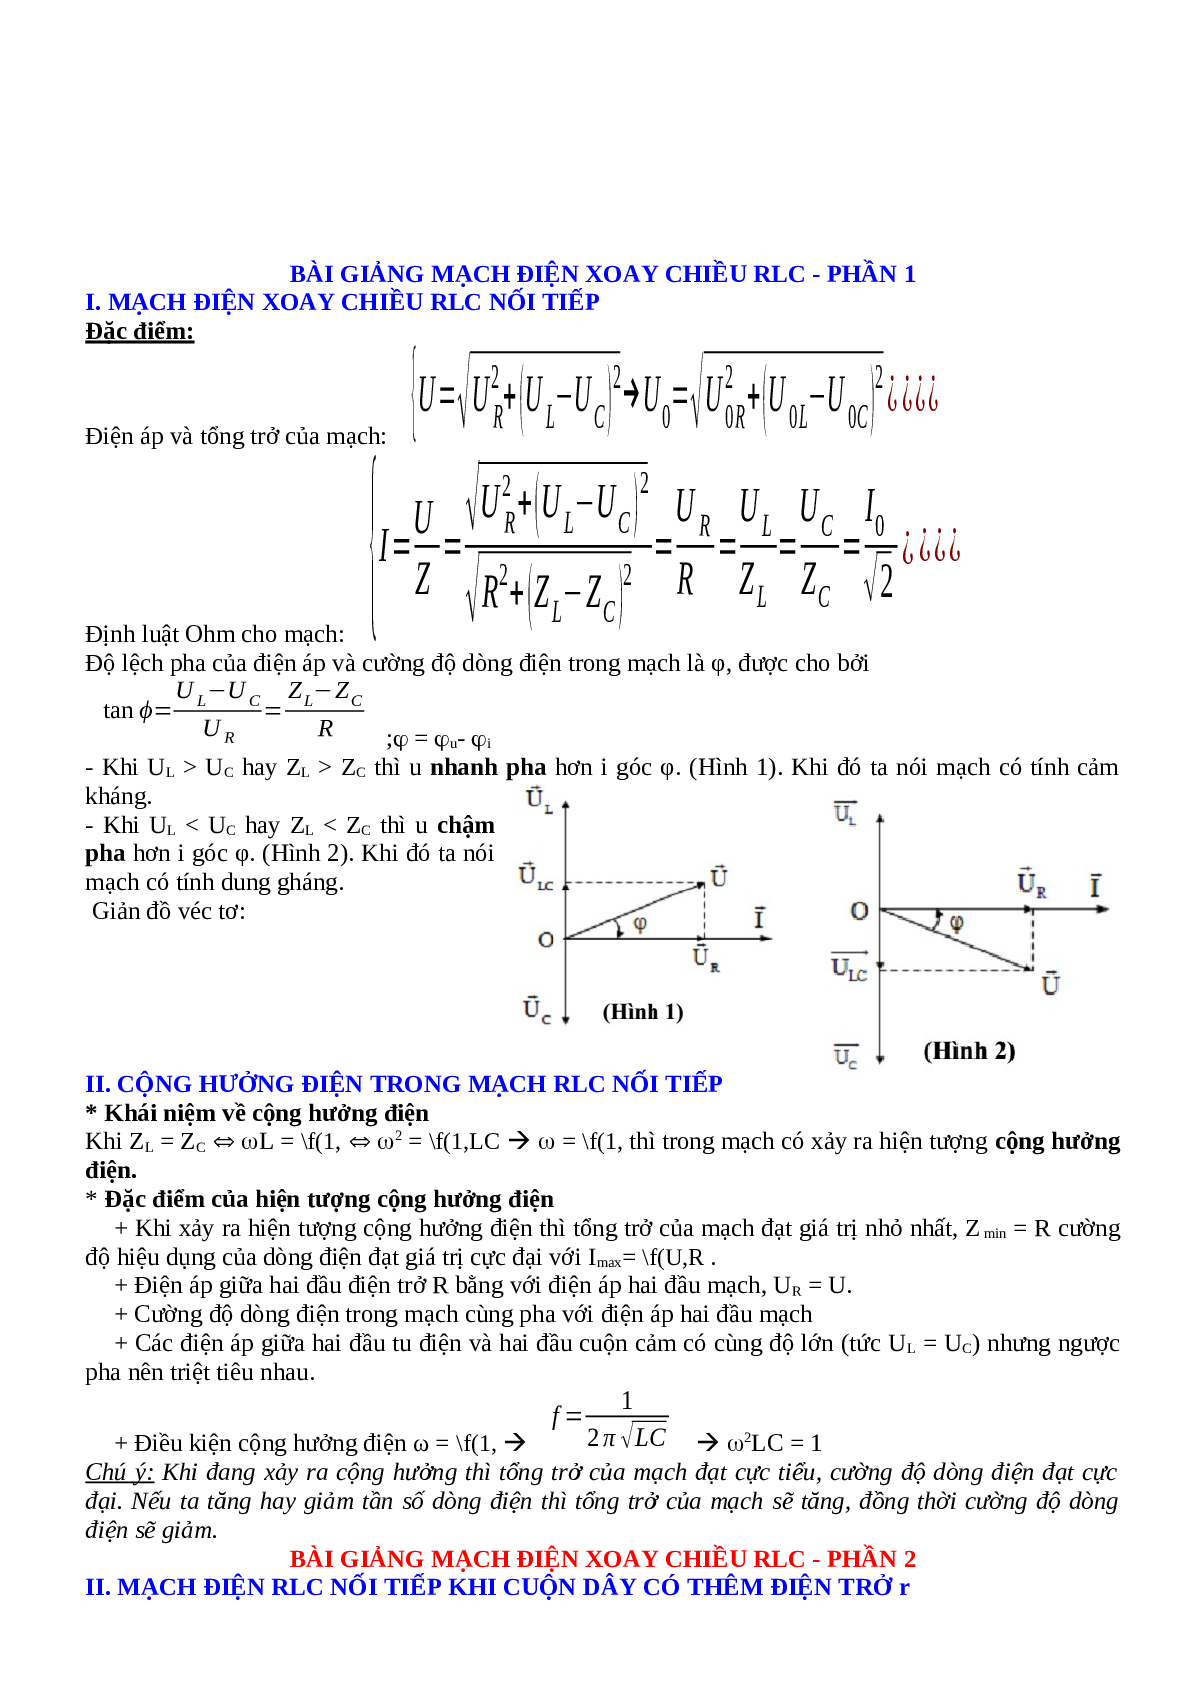 Lý thuyết, bài tập về Điện xoay chiều hay nhất - Vật lí 12 (trang 4)